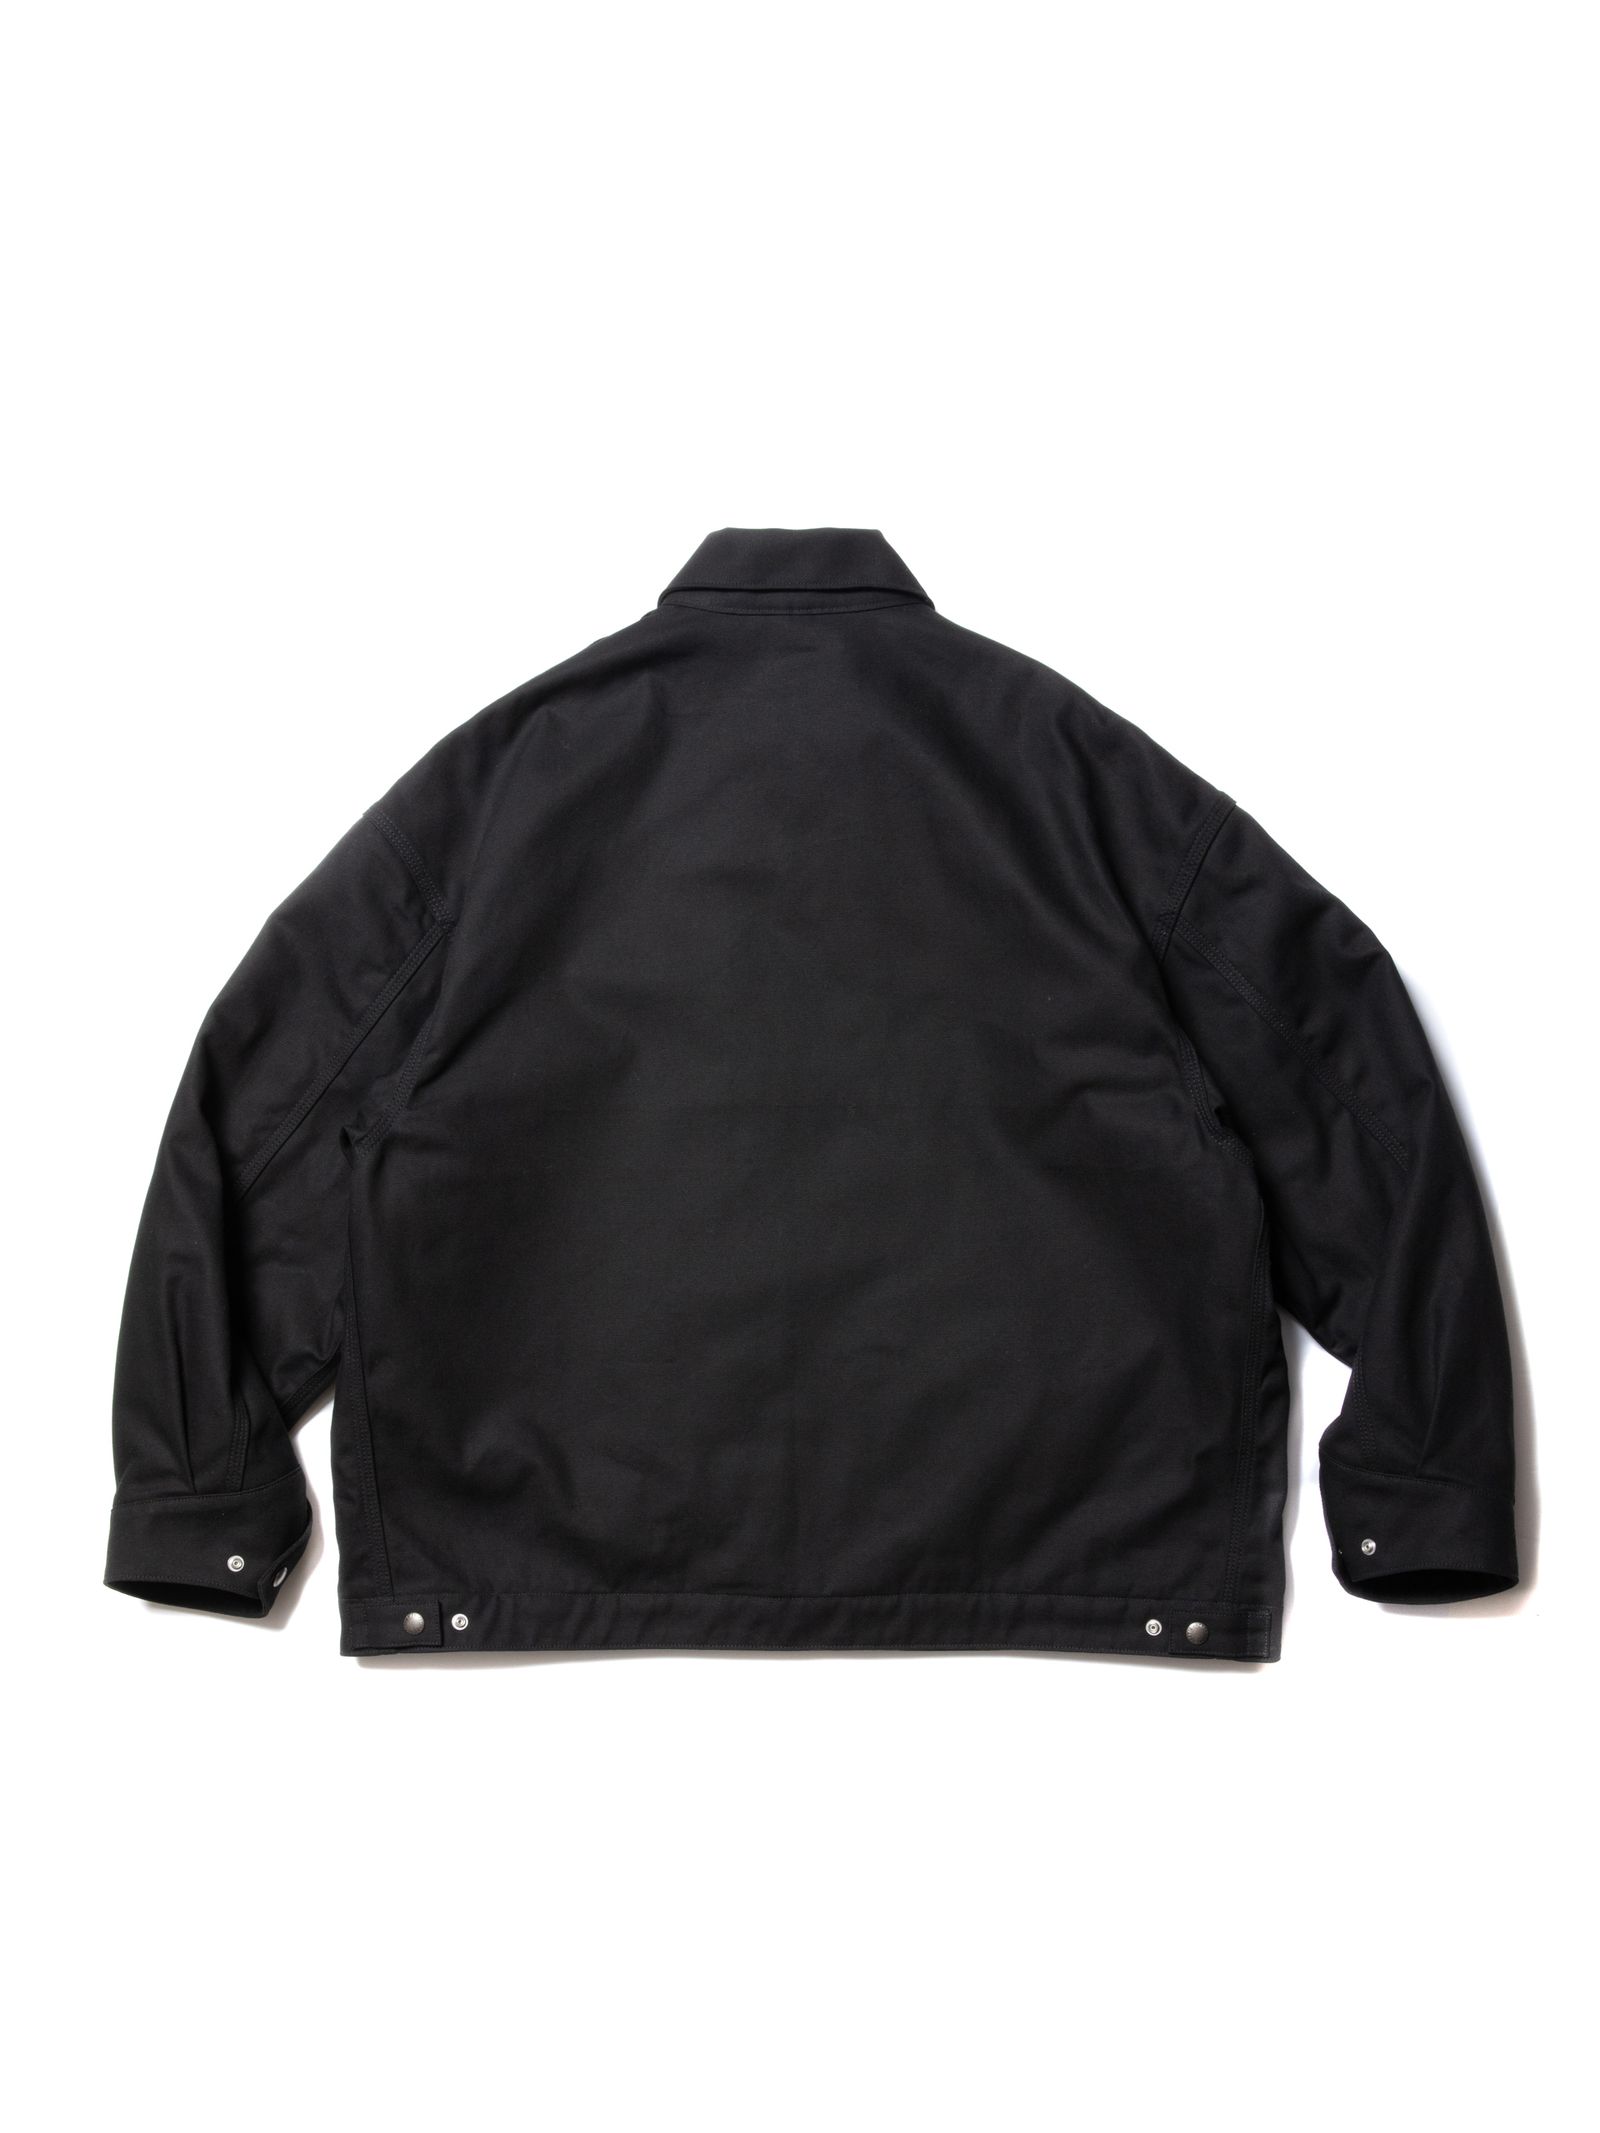 Cotton OX Work Jacket / BLACK | Stripe Online Store